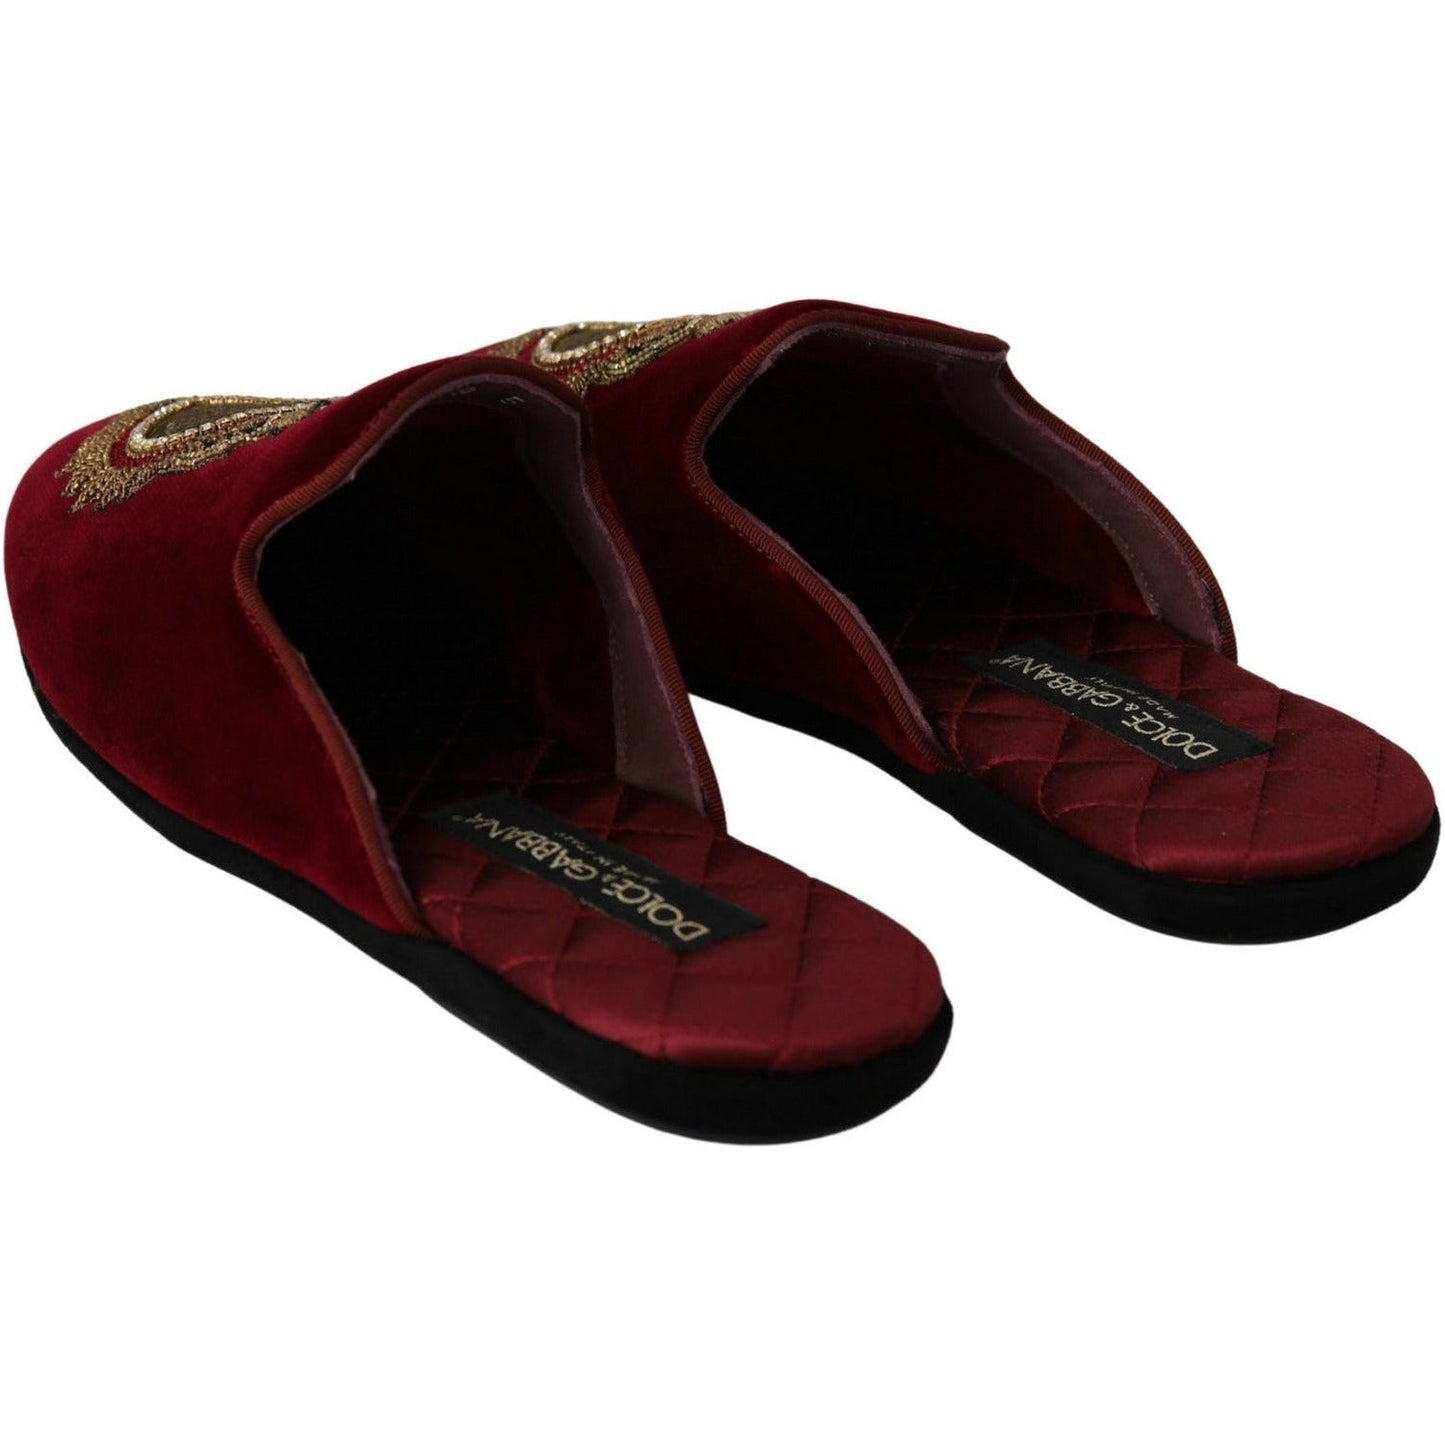 Dolce & Gabbana Red Velvet Embroidered Slides red-velvet-sacred-heart-embroidery-slides-shoes